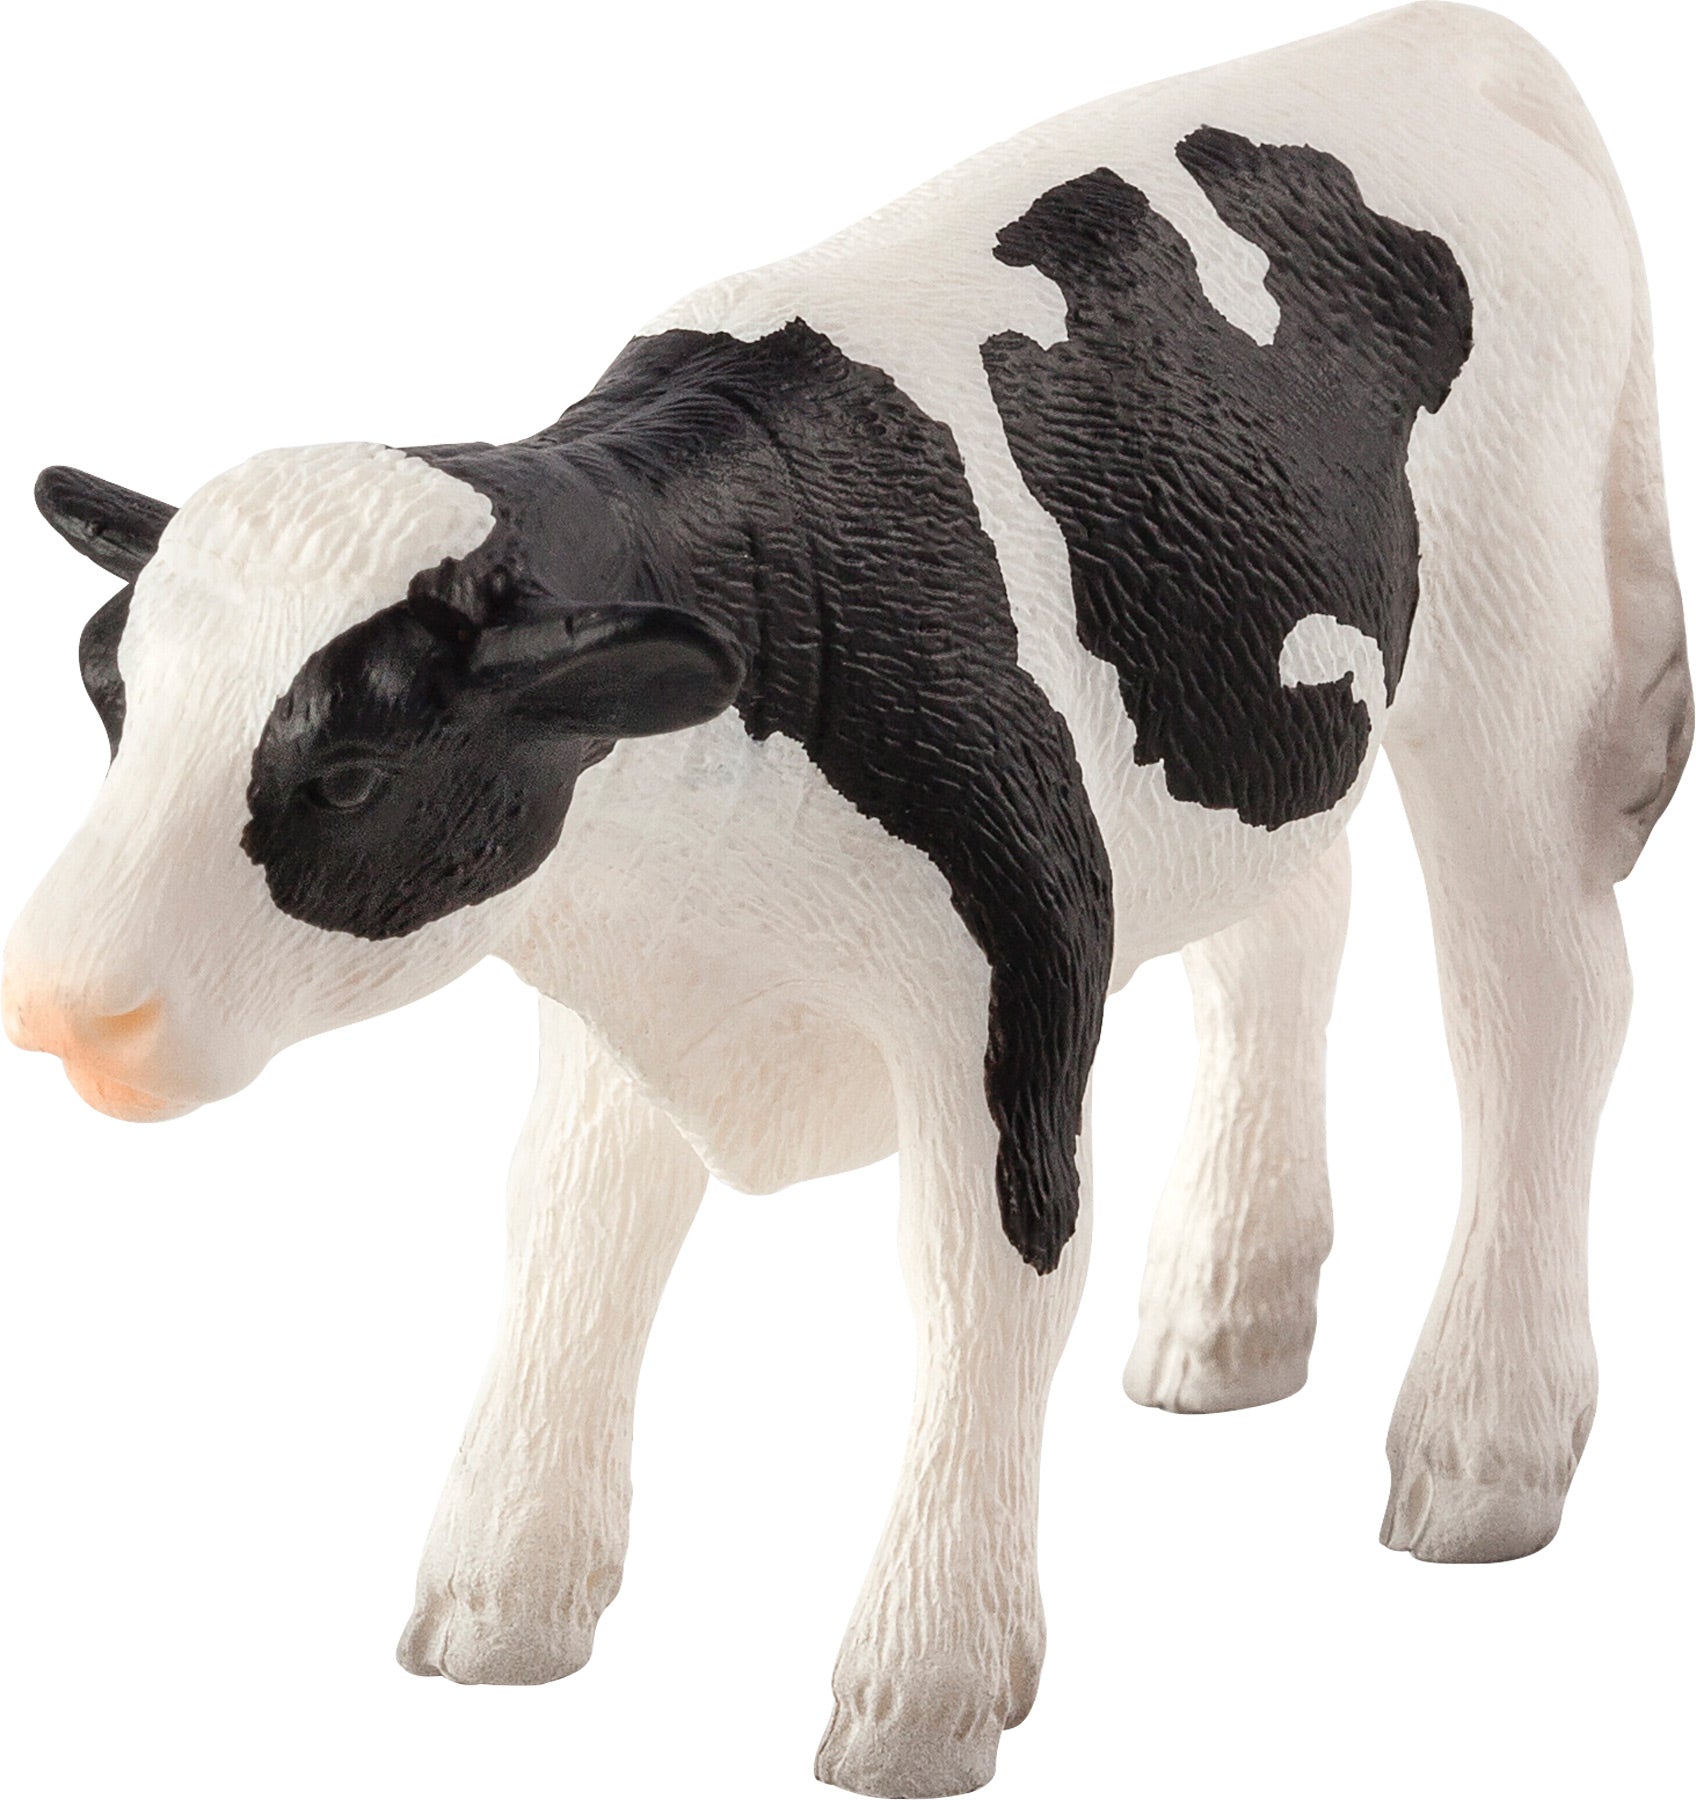 Holstein Calf standing